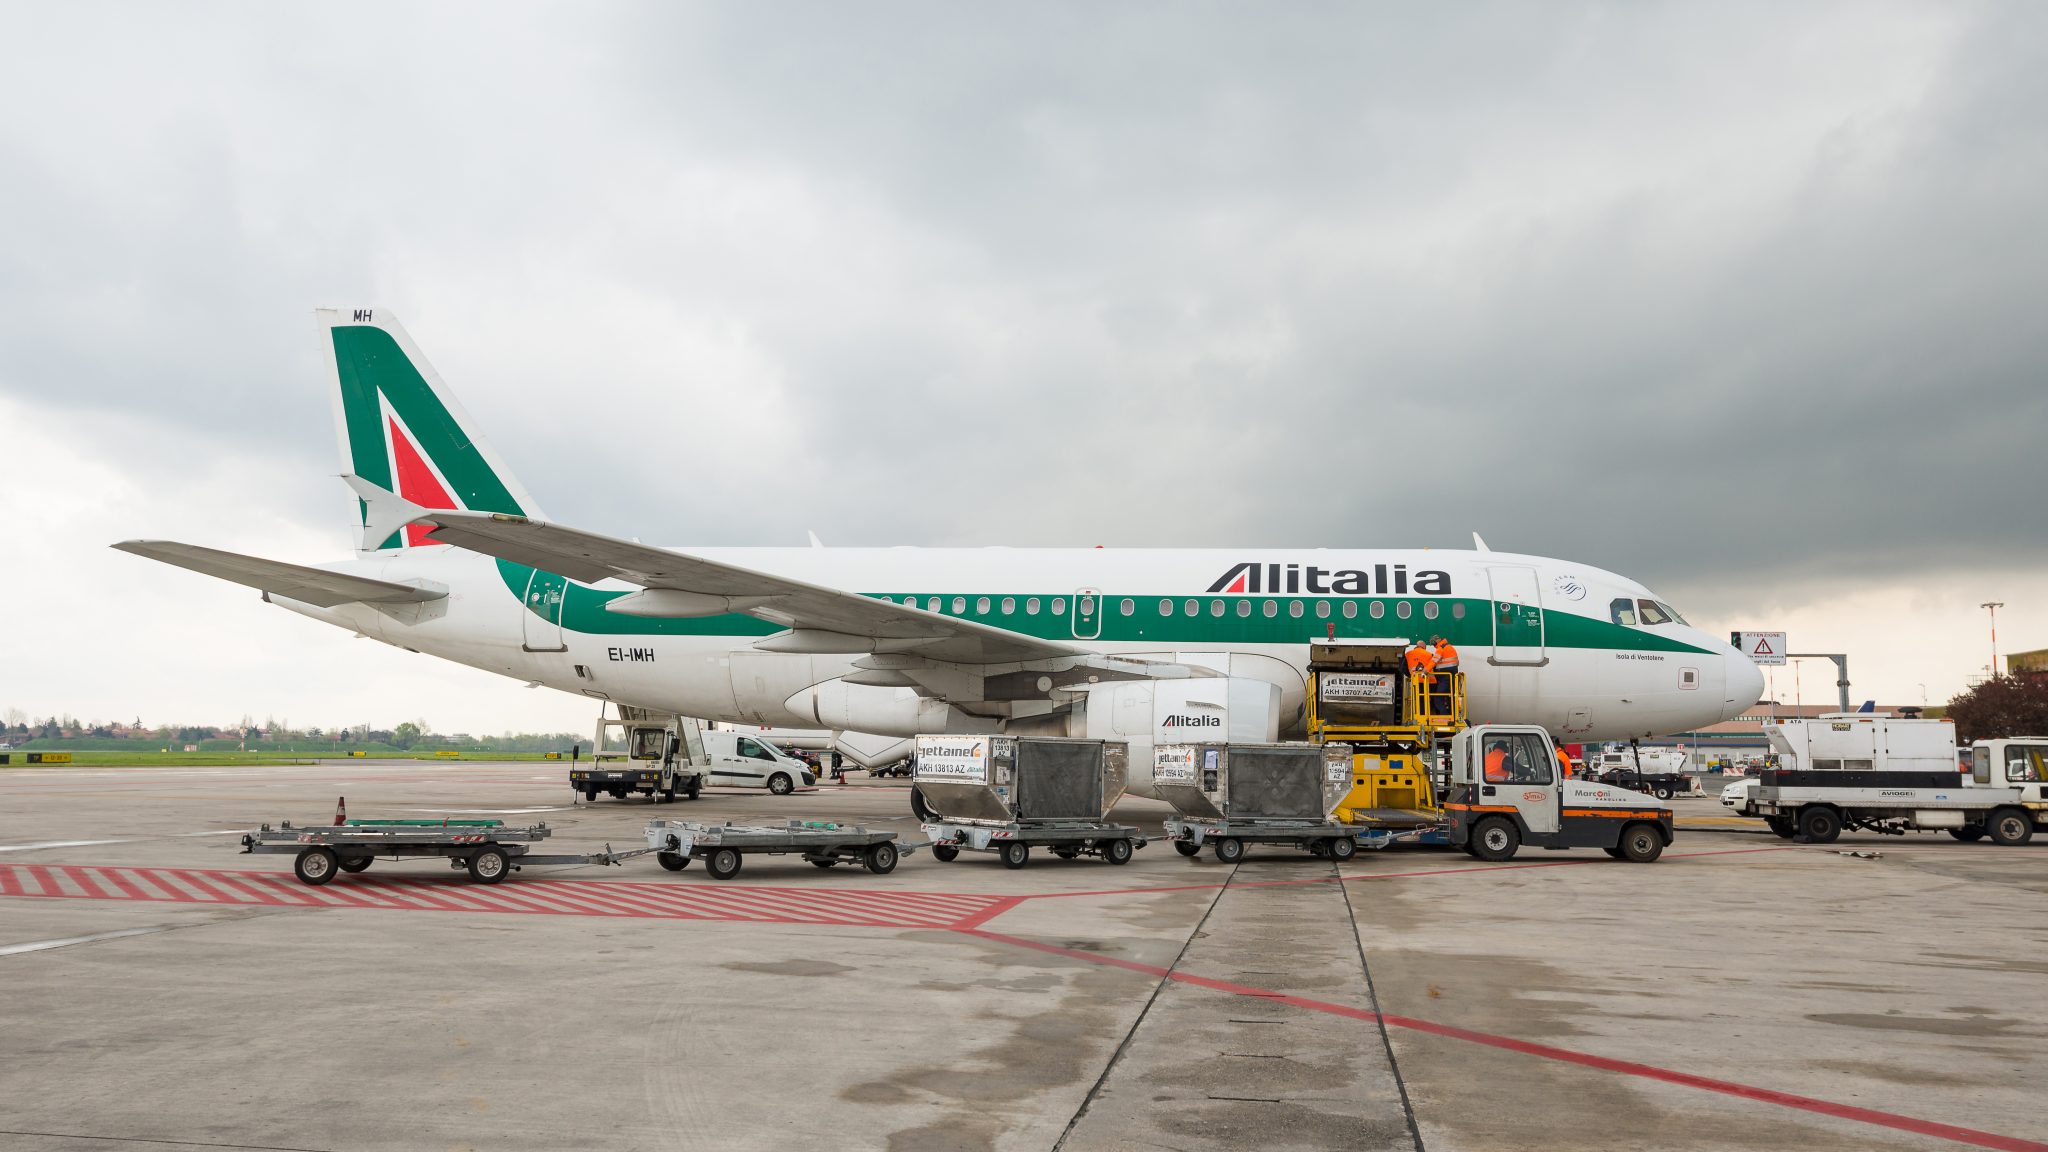 Ryanair may seek a majority stake in Alitalia